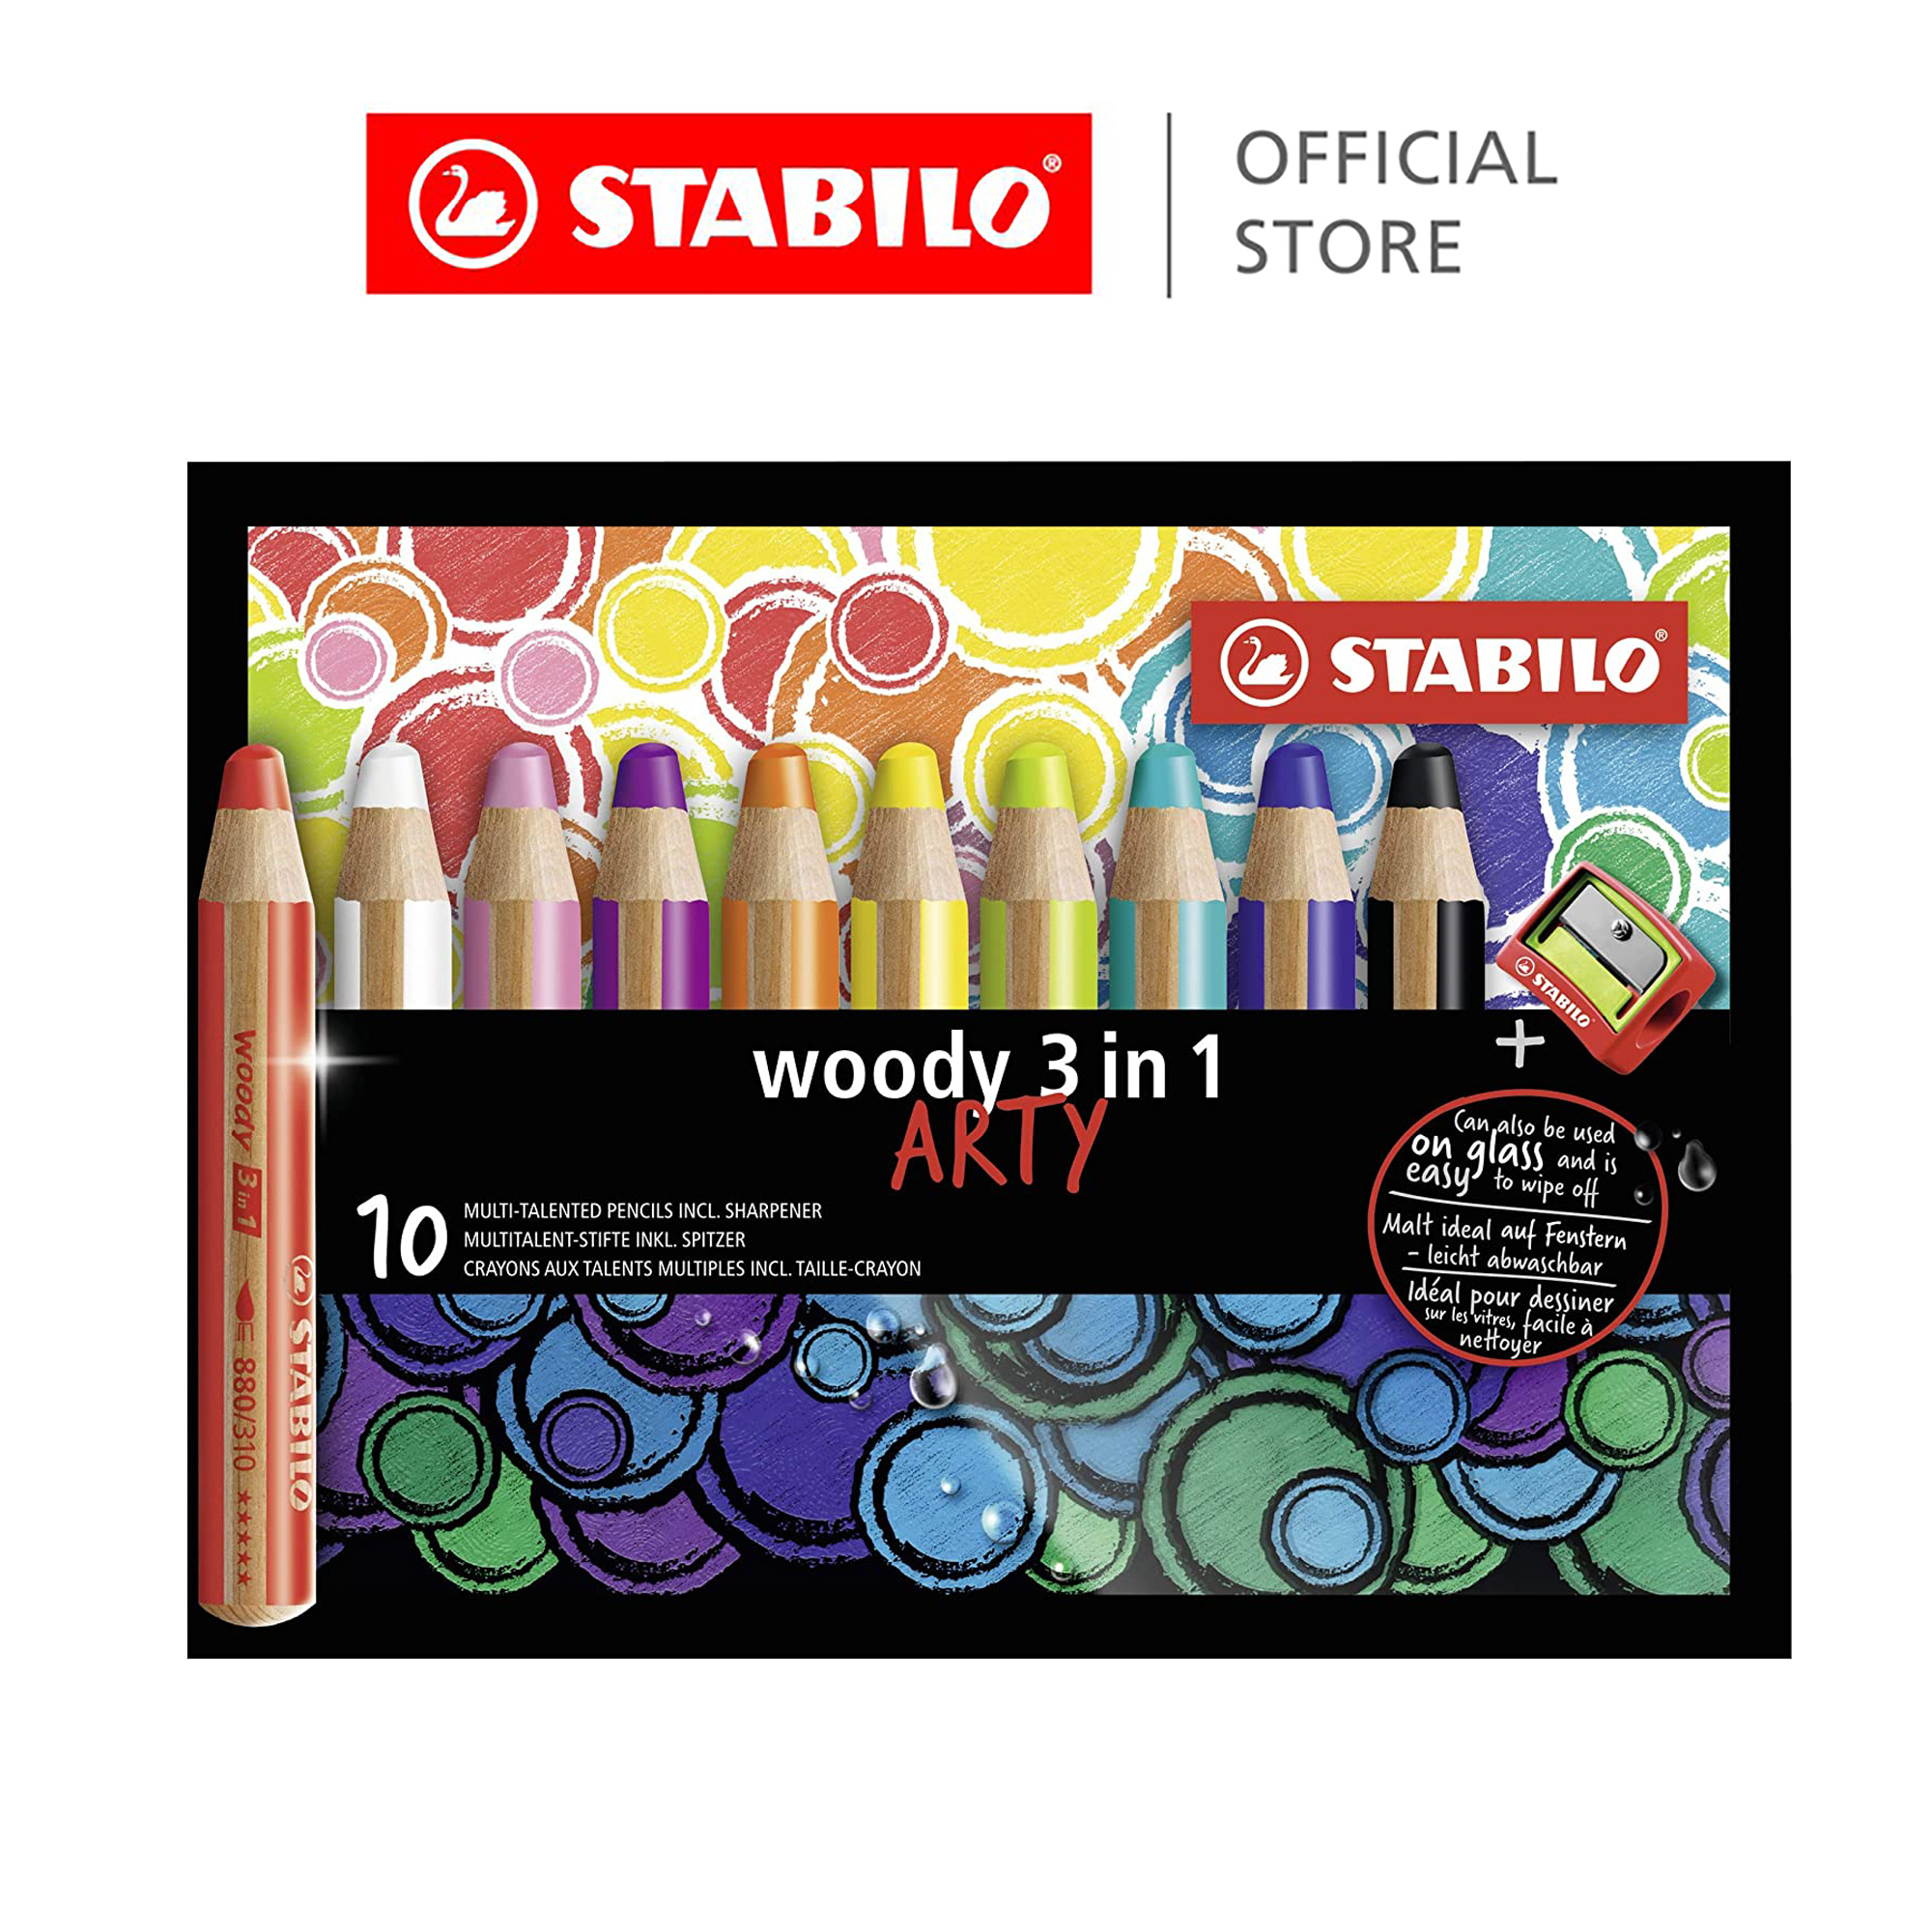 STABILO Woody 3 in 1 Super Jumbo Pencils Wallet of 10 Assorted Sharpener for sale online 